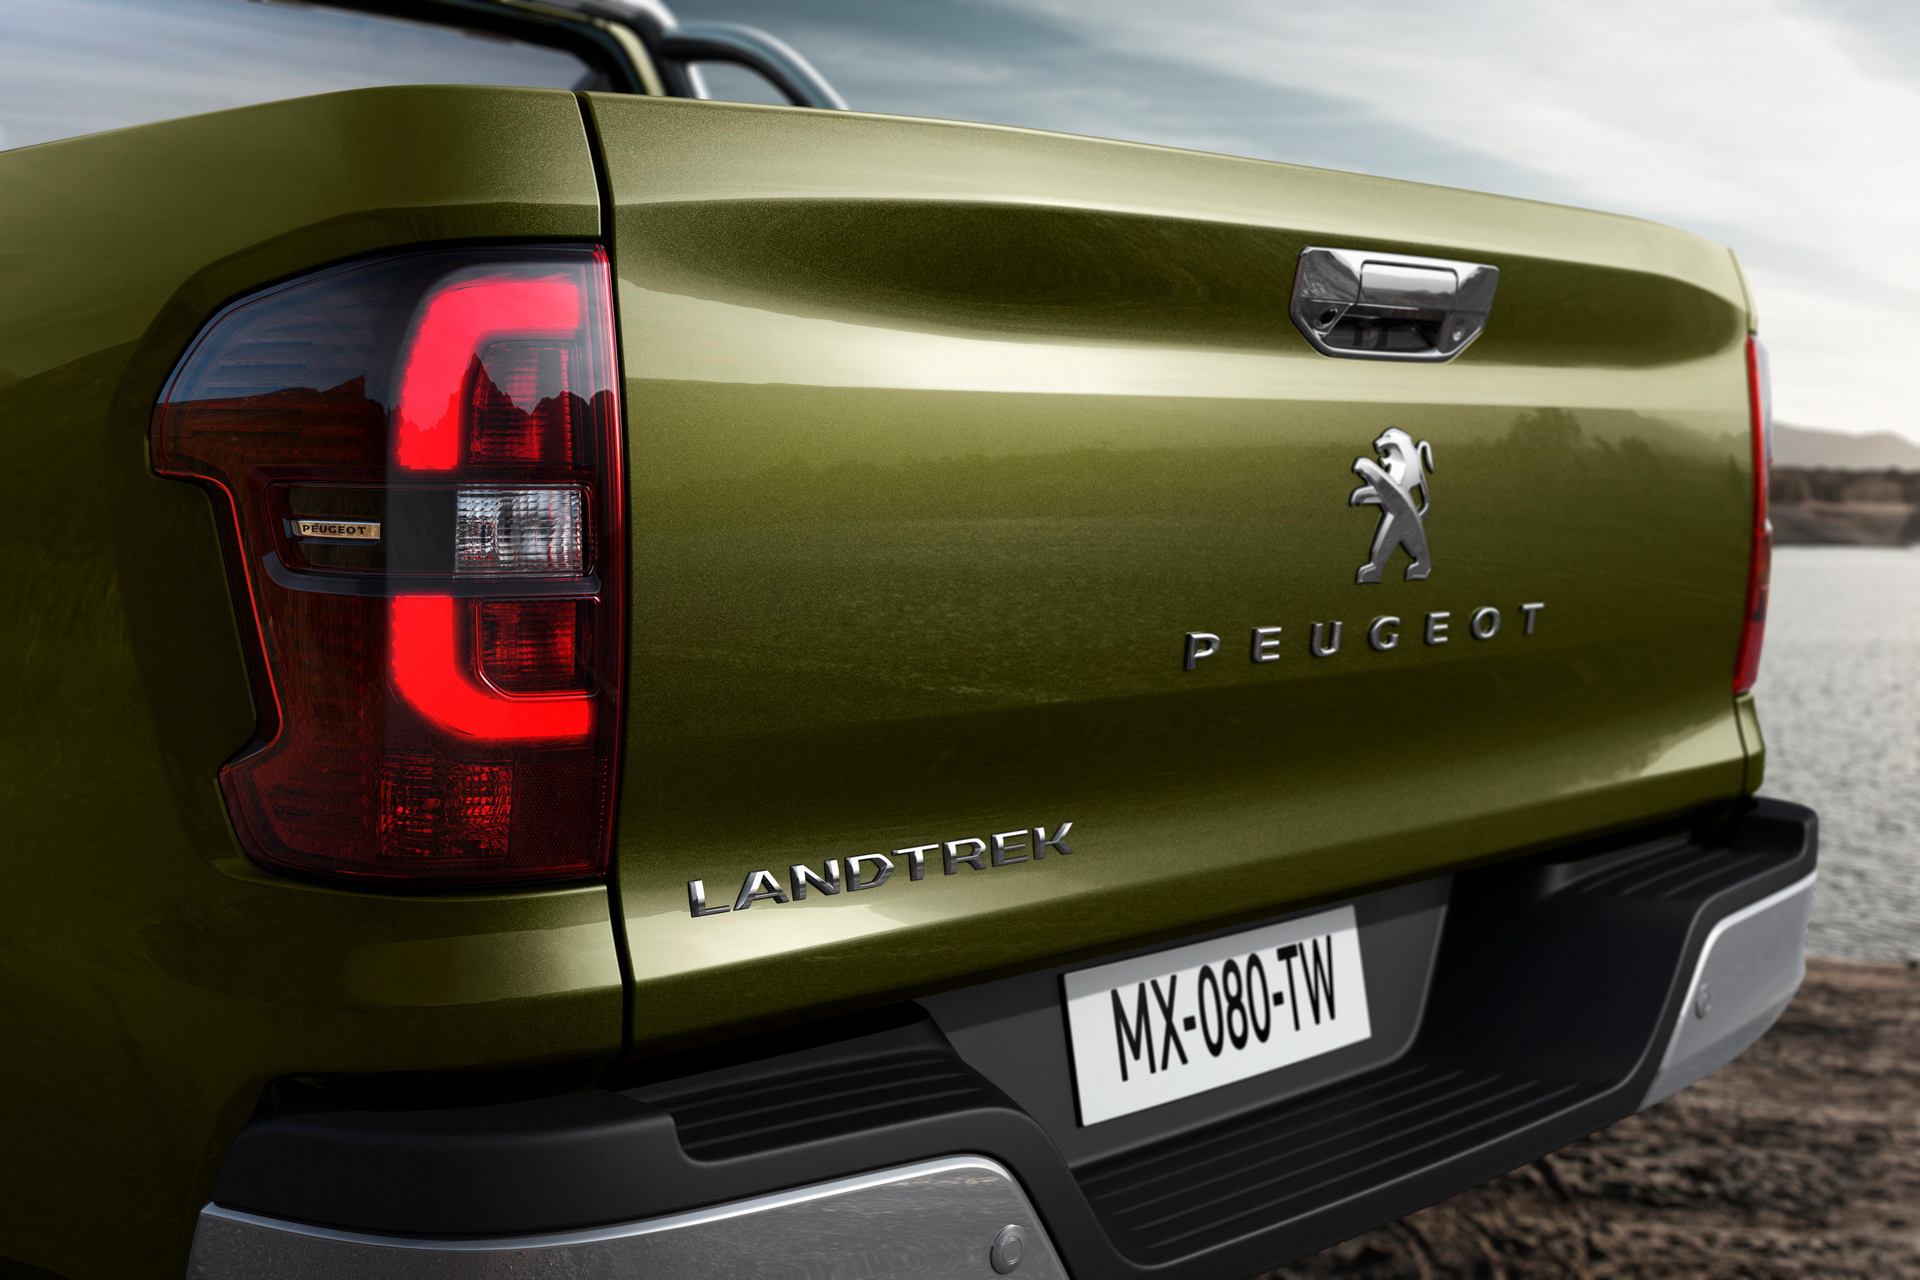 Peugeot yeni pickup modelini tanıttı: Landtrek